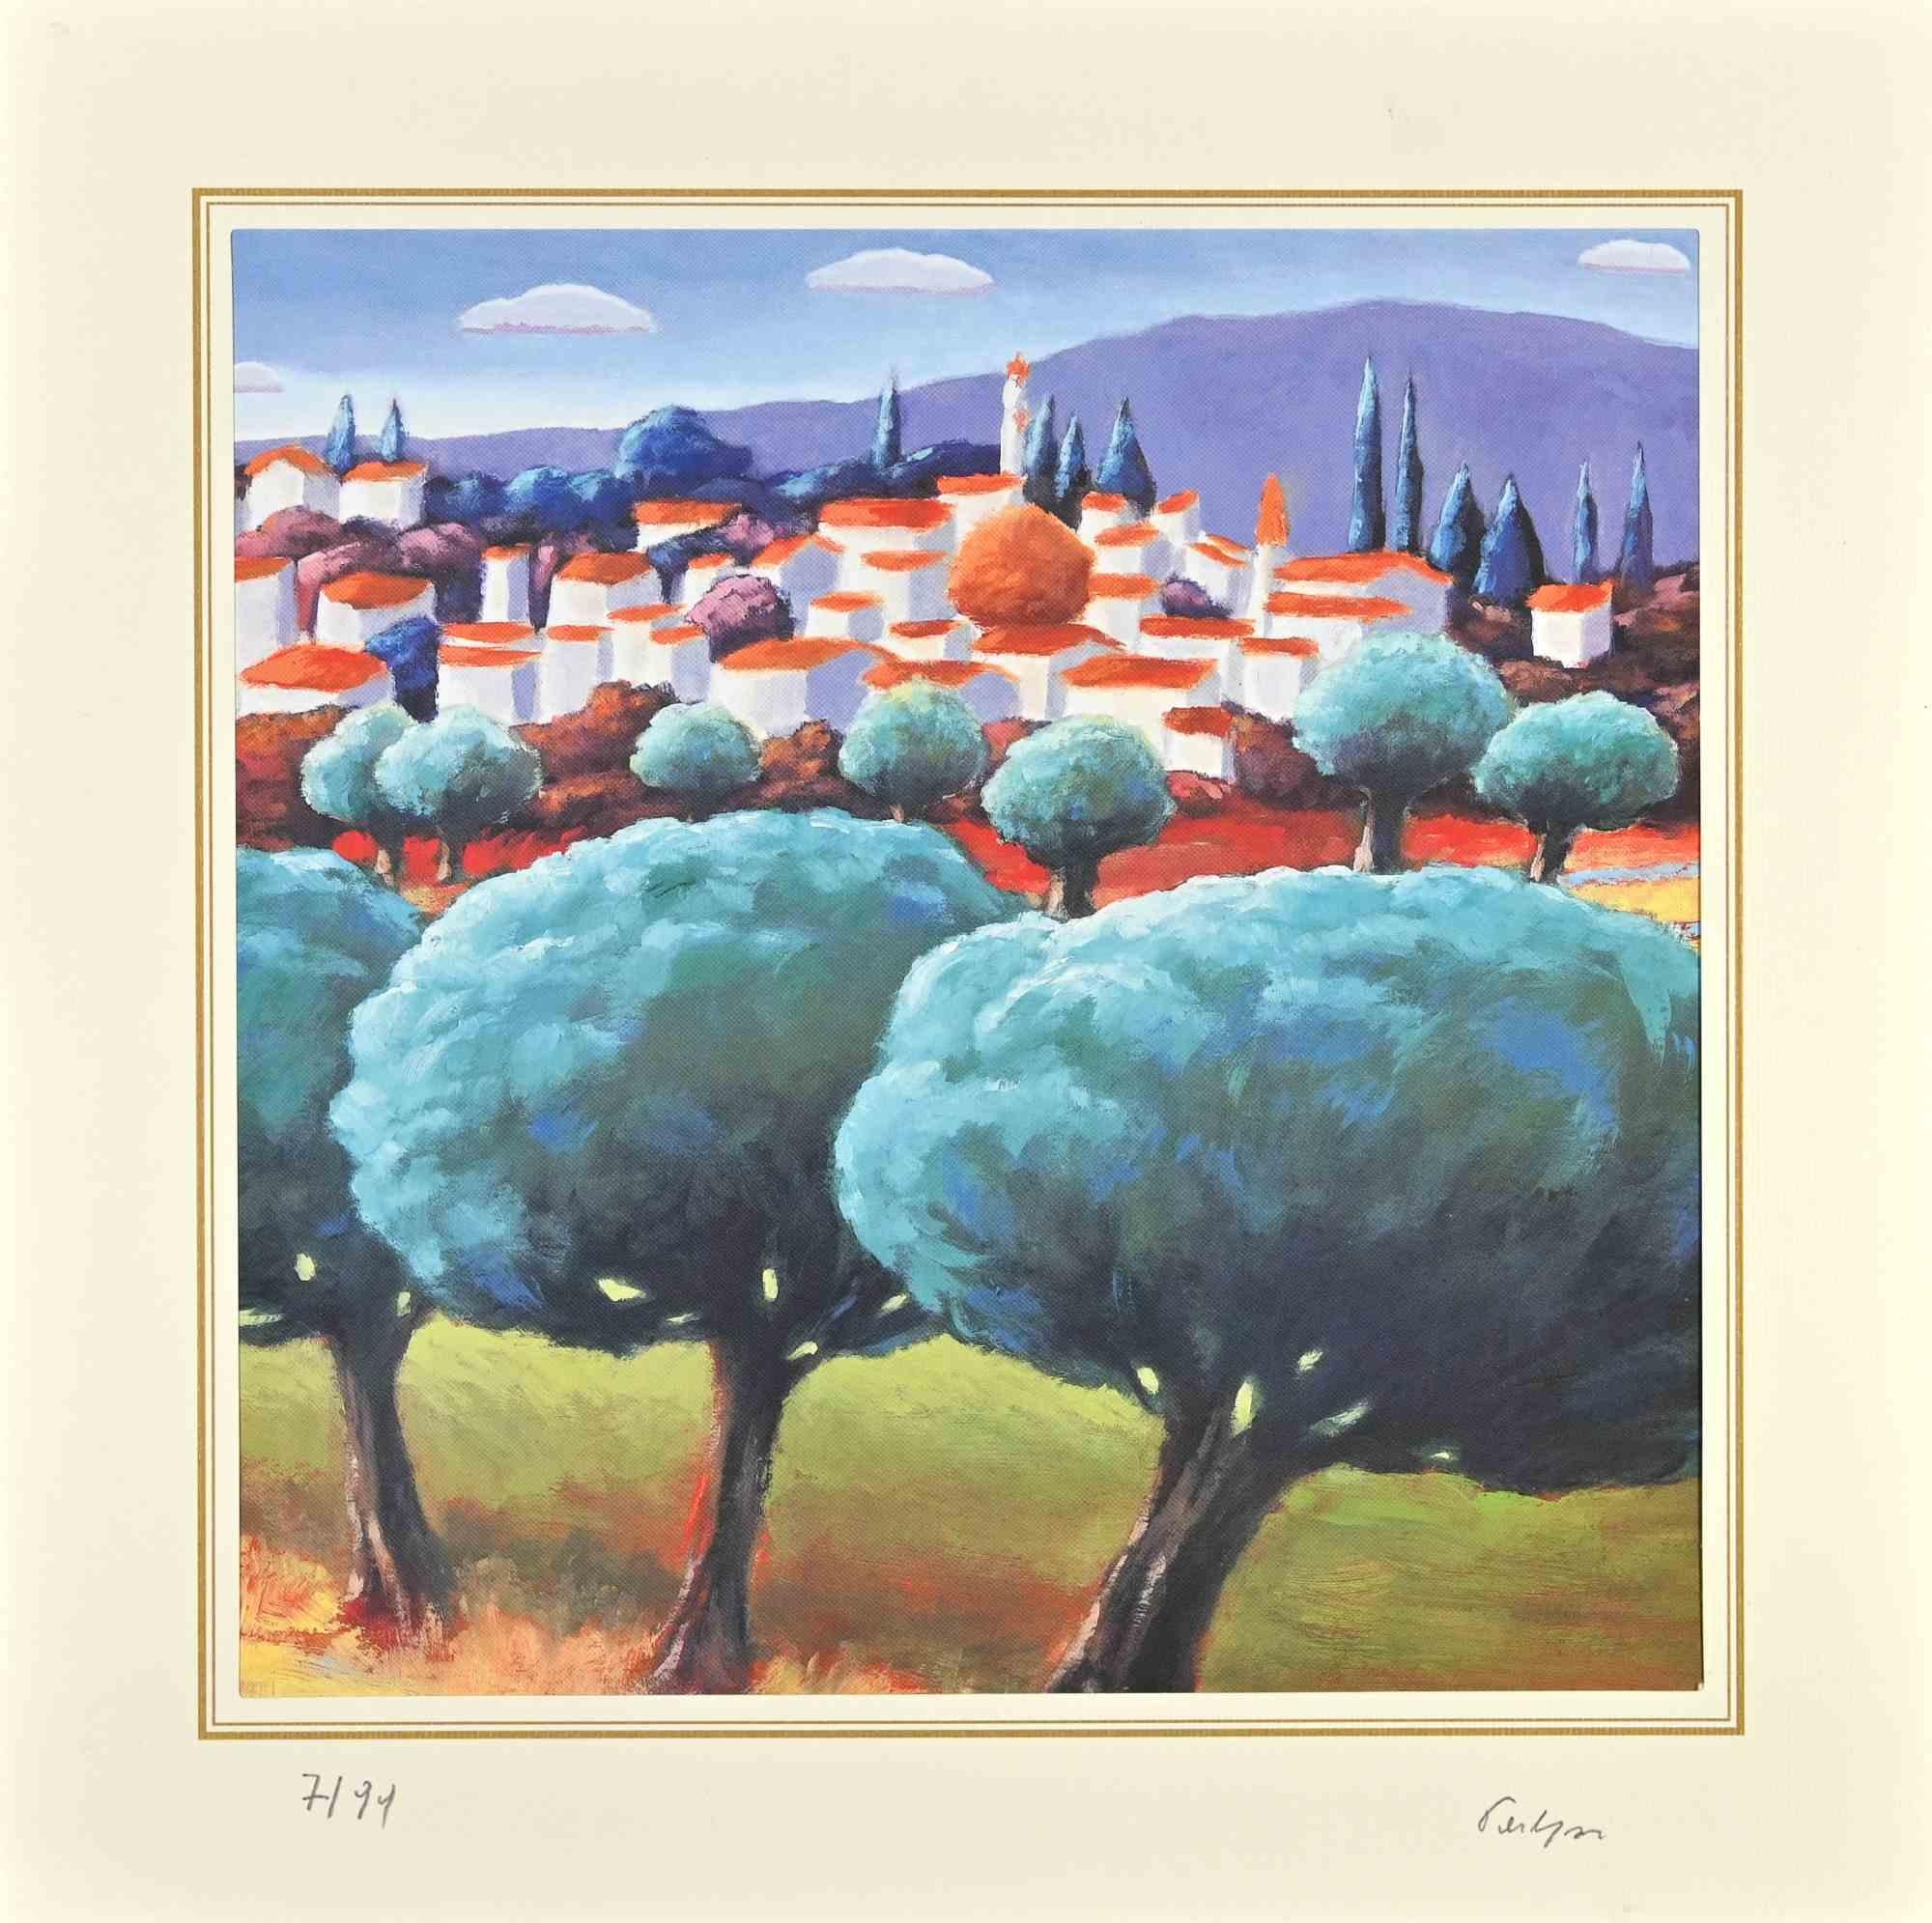 Landscape ist eine Lithographie von Bob Paulson aus den 2000er Jahren.

Nummeriert, Ausgabe, 7/99.

Handsigniert.

Das Kunstwerk wird durch harmonische Farben in einer ausgewogenen Komposition dargestellt.